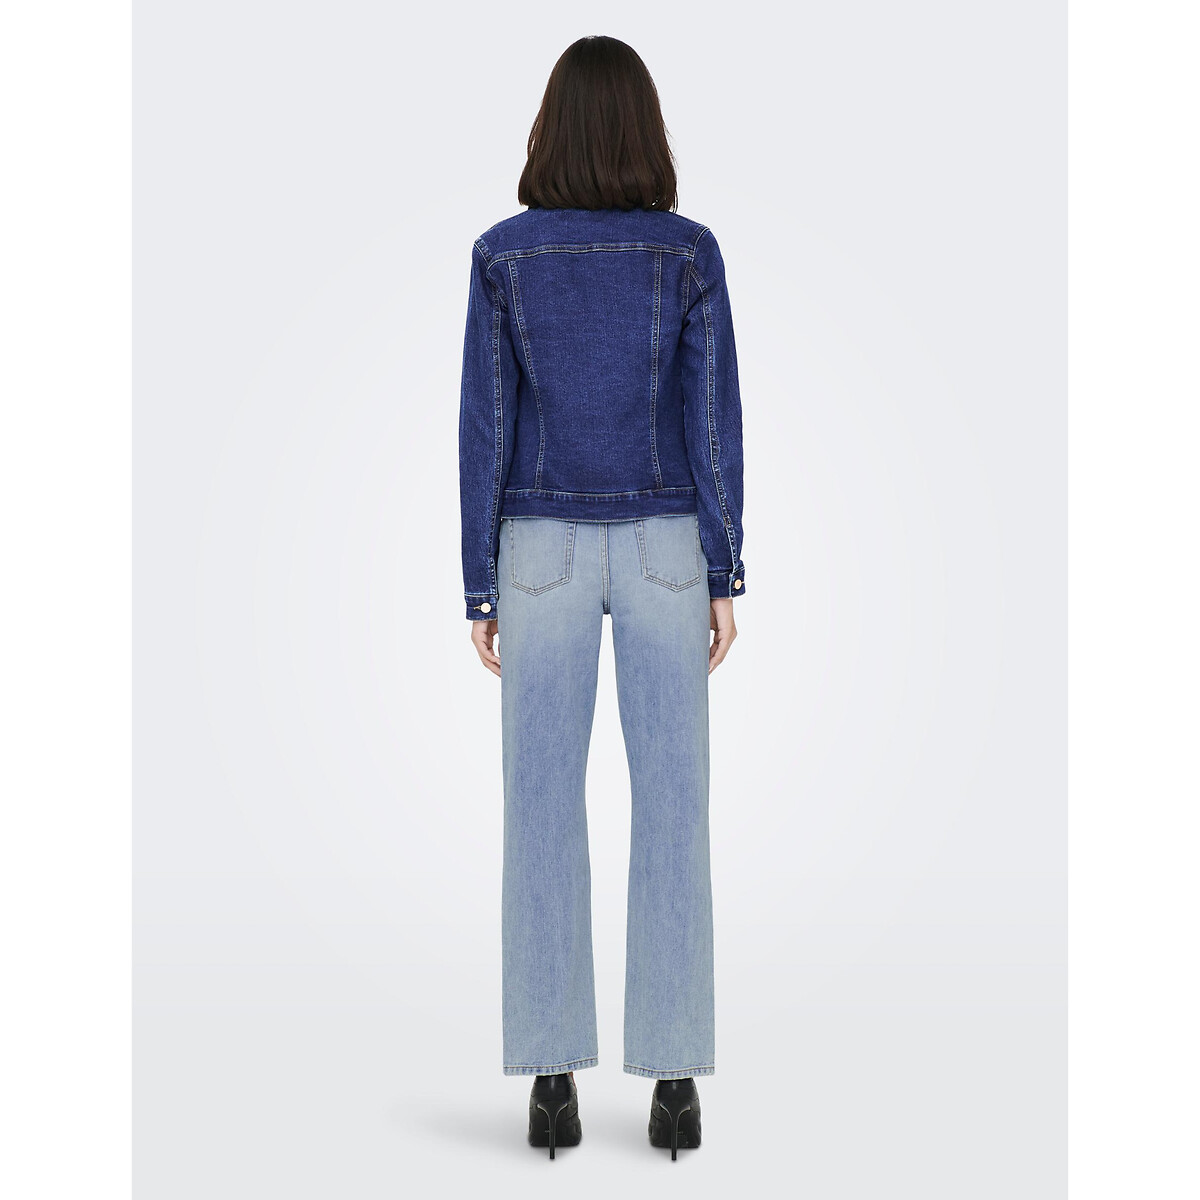 Жакет Из джинсовой ткани XL синий LaRedoute, размер XL - фото 4